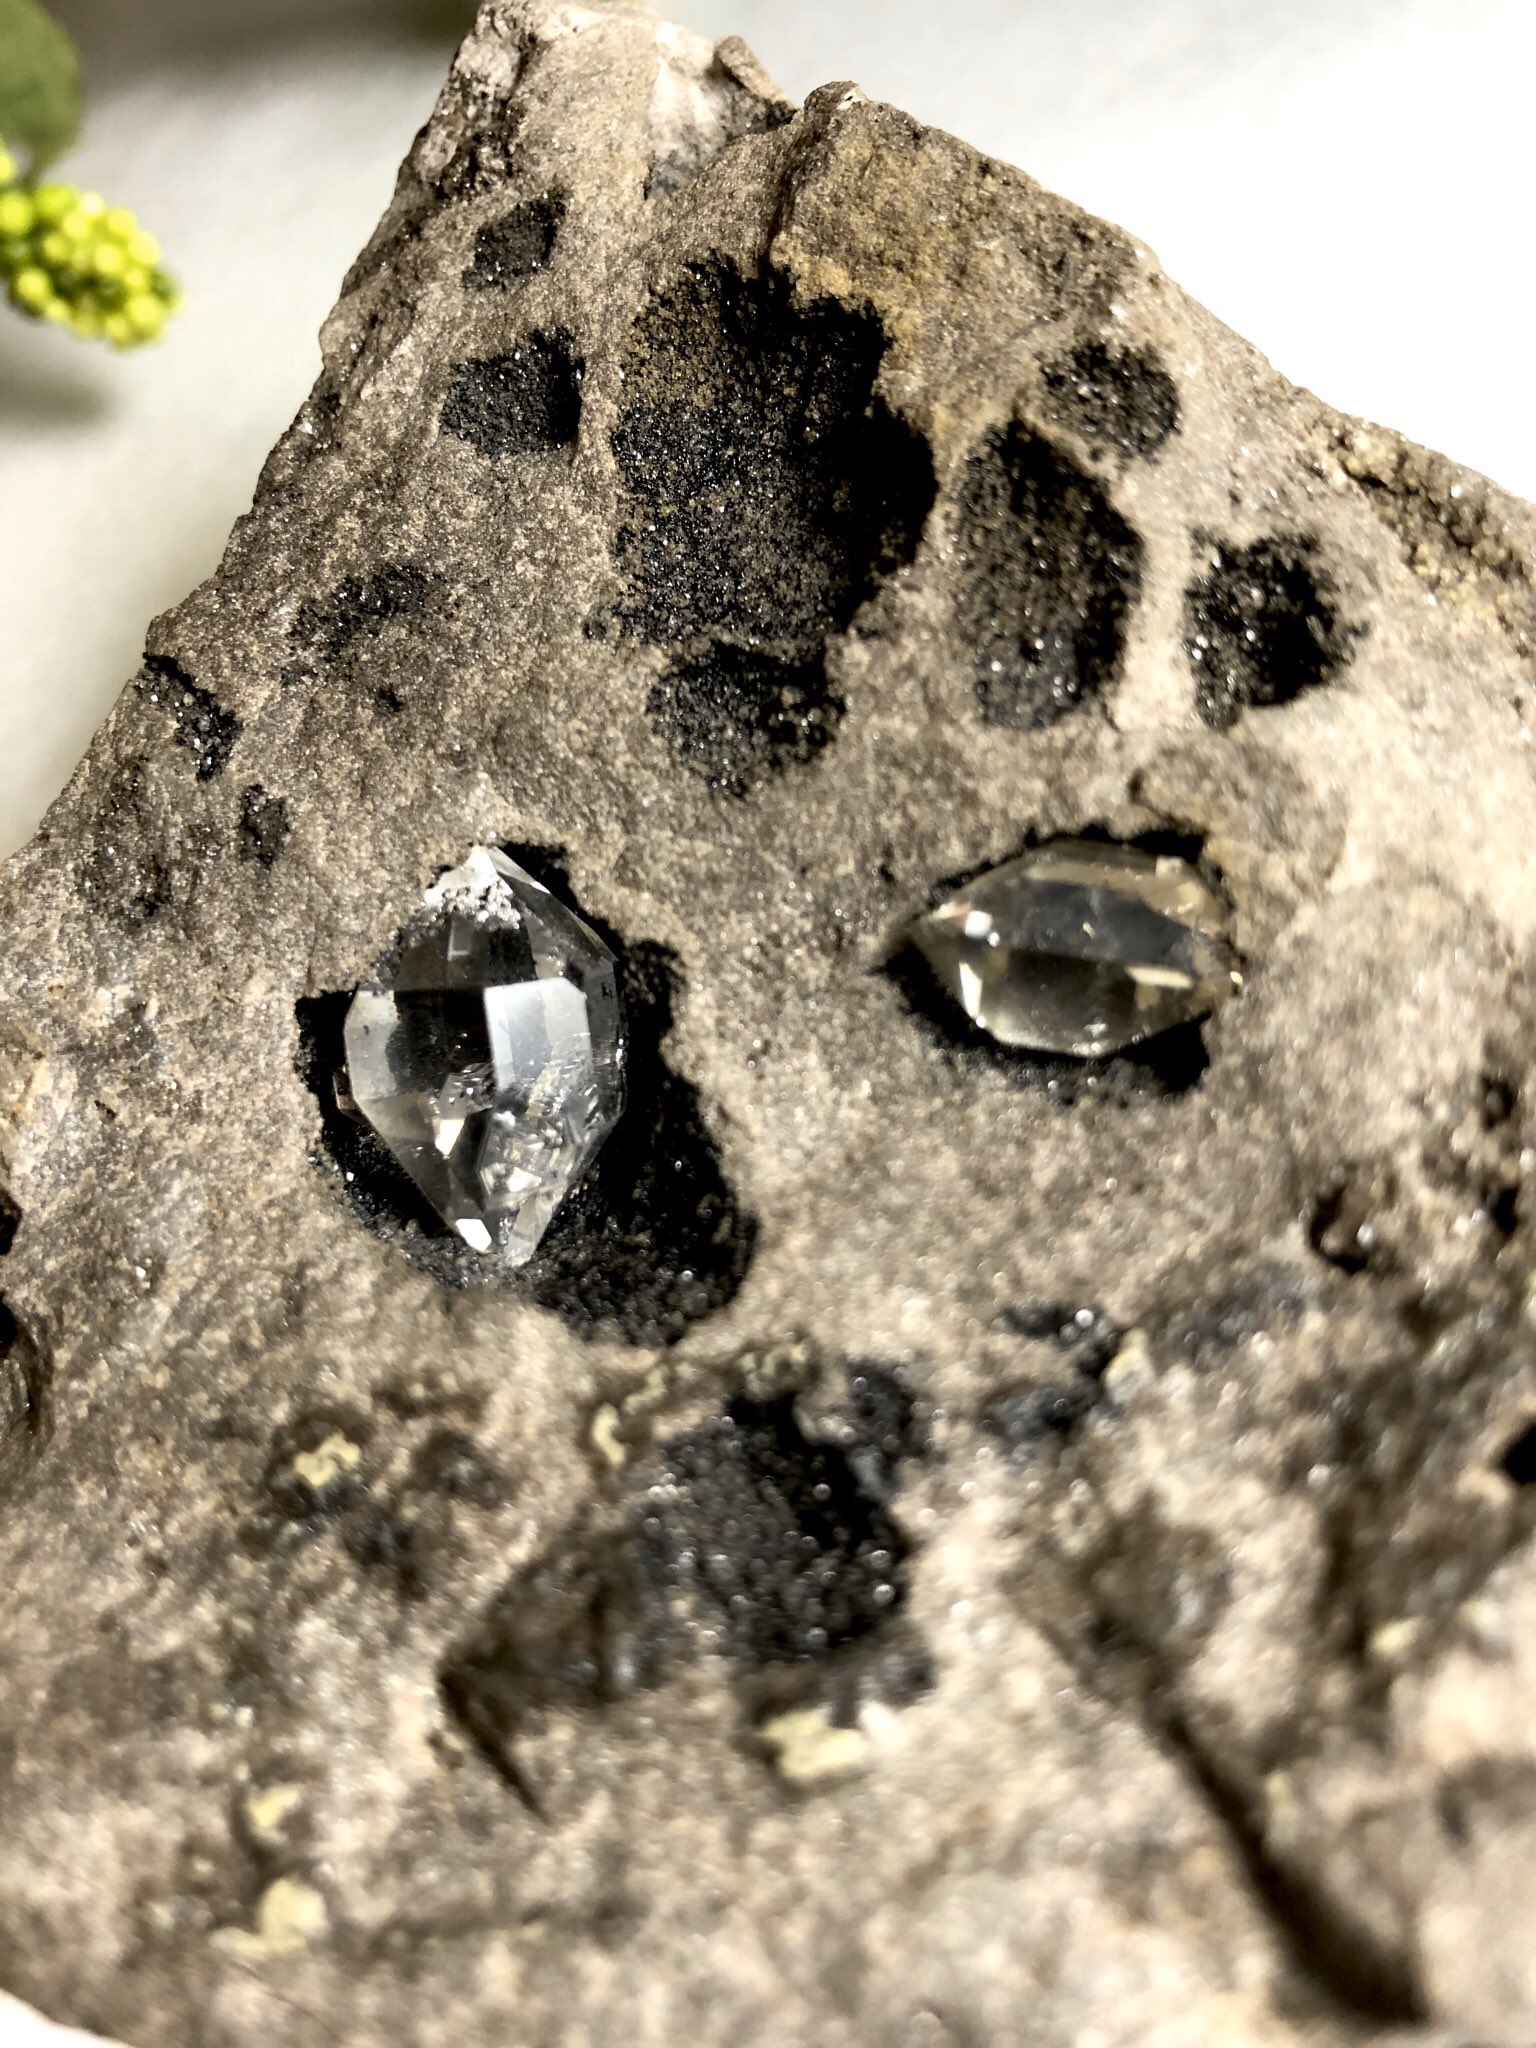 ペトラ ハーキマー水晶の 母岩付き原石です ハーキマーダイヤモンドとも 呼ばれる ニューヨークハーキマーで 産出される 名前の通り ダイヤモンドのように 綺麗な水晶です ハーキマー水晶 ハーキマーダイヤモンド 天然石アクセサリー 天然石